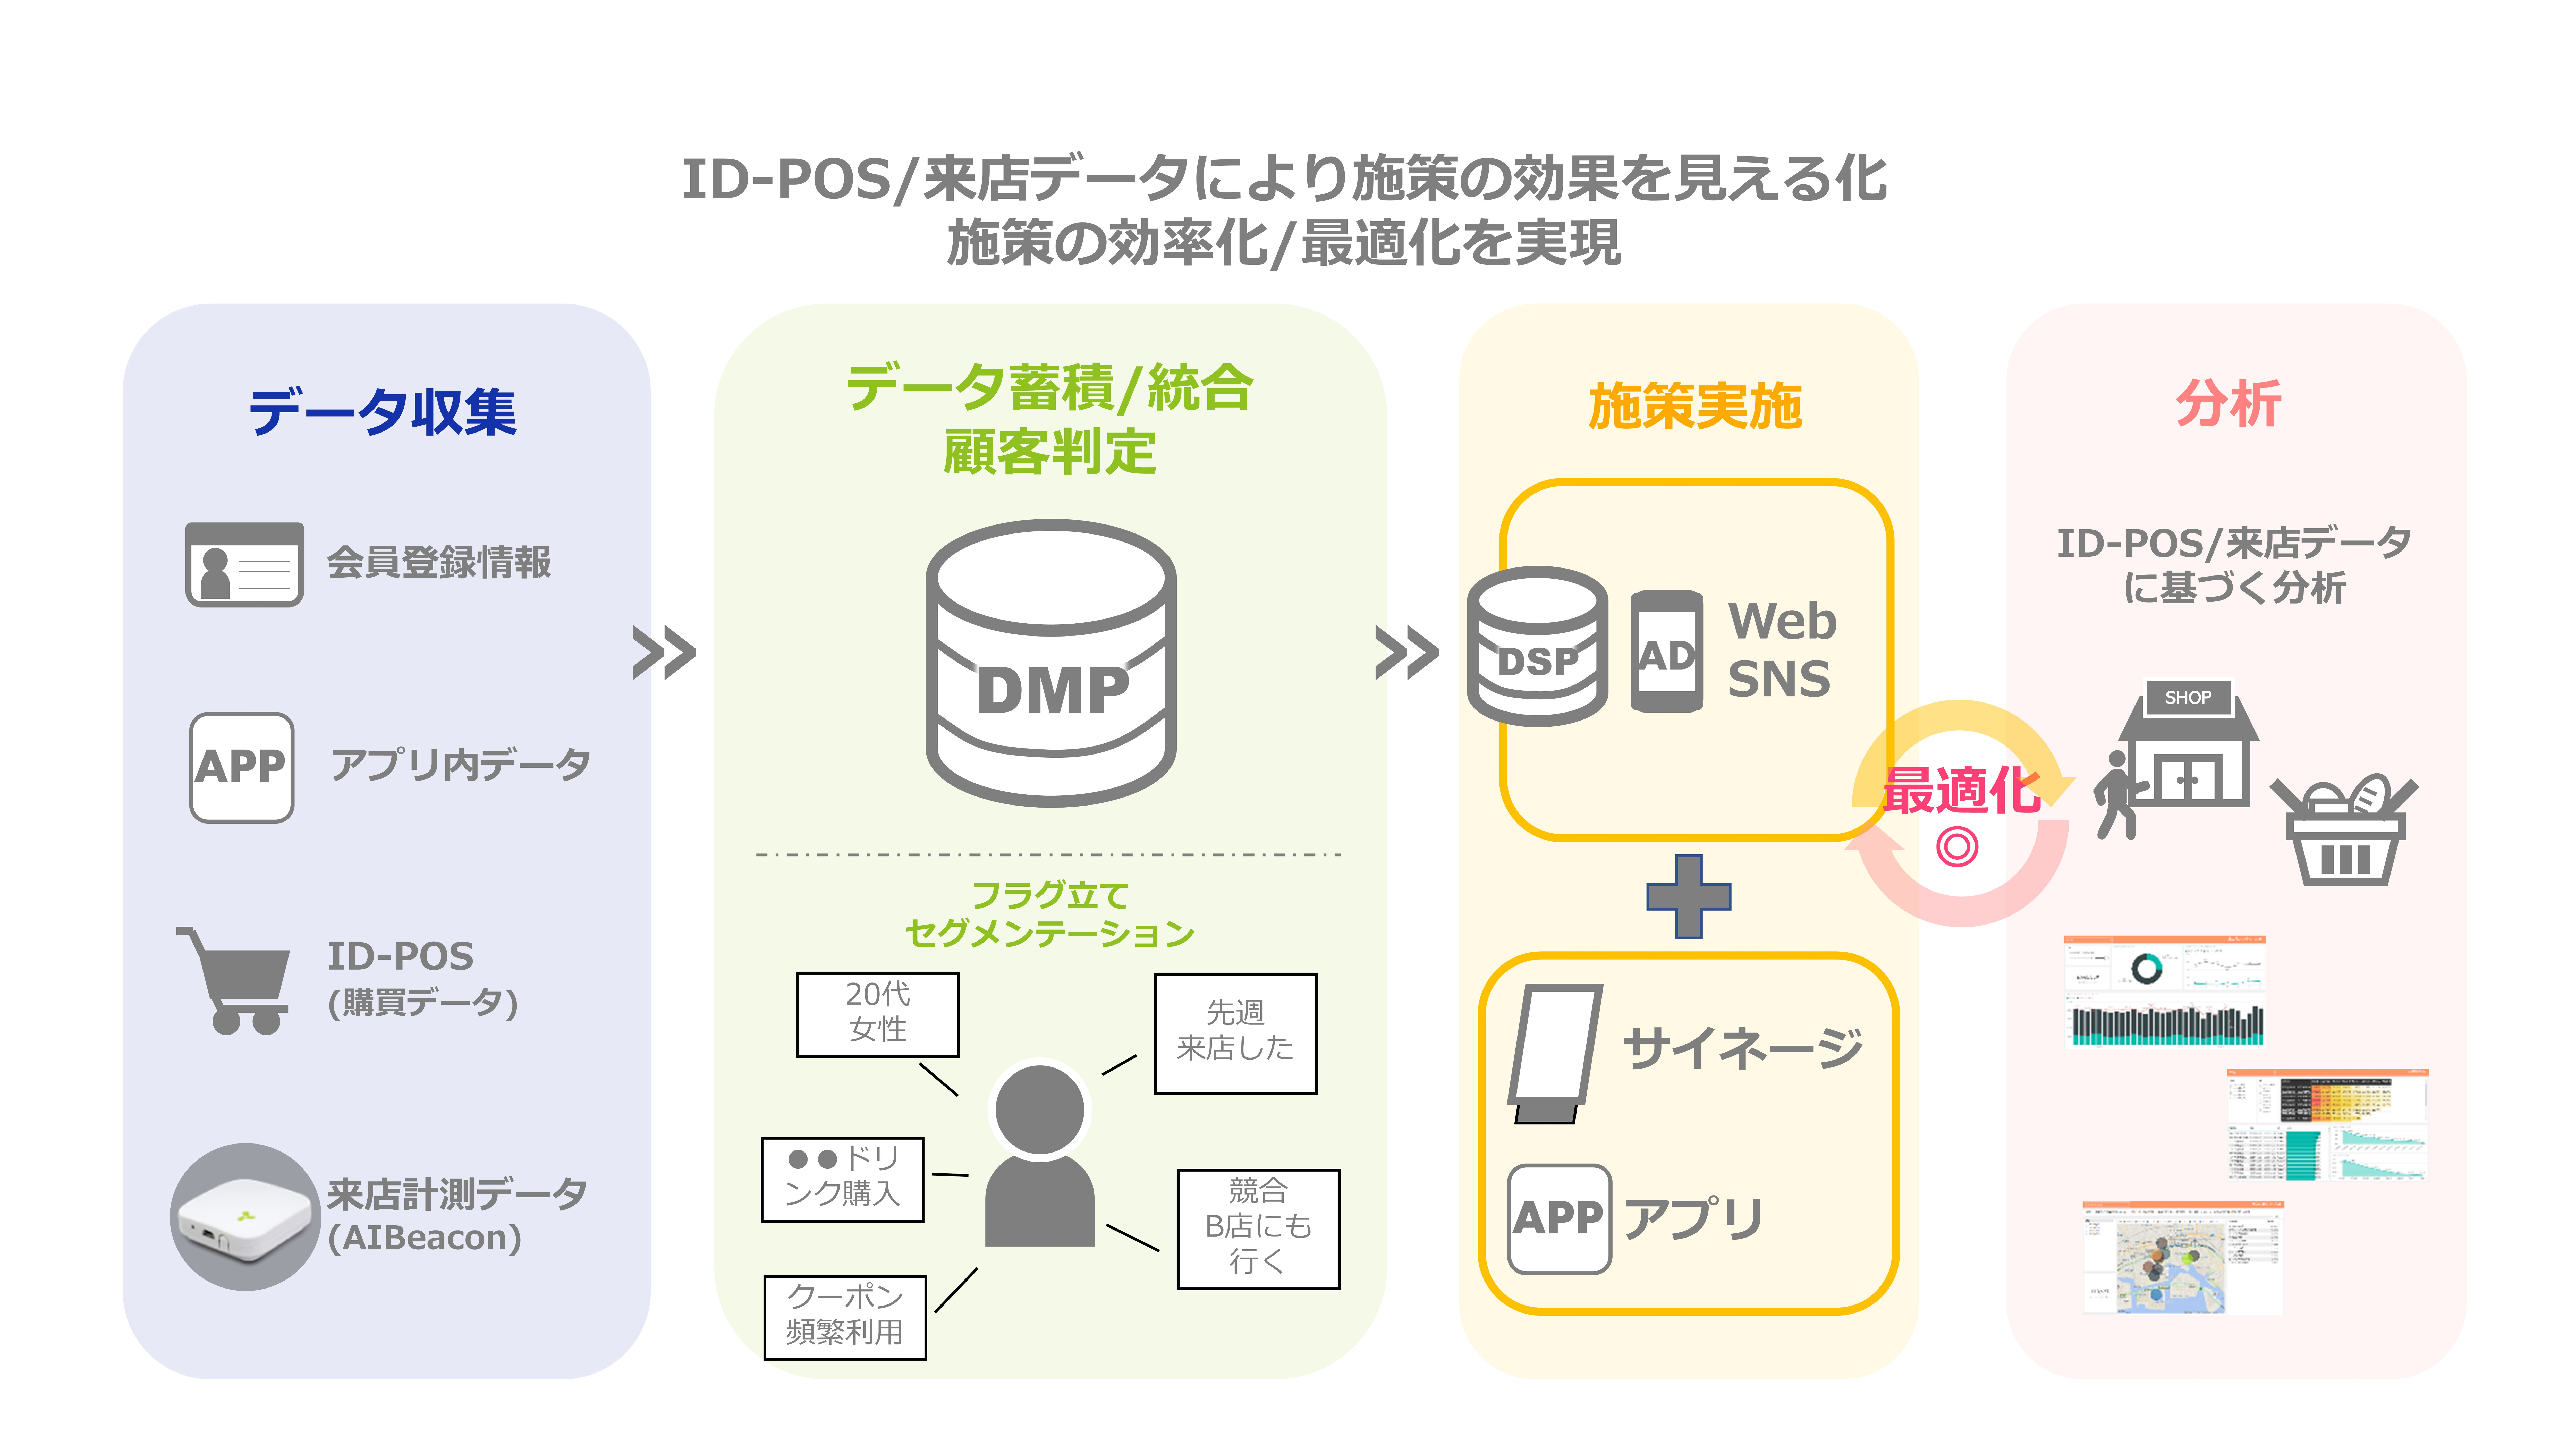 リテールメディアDMP/DSP概略図